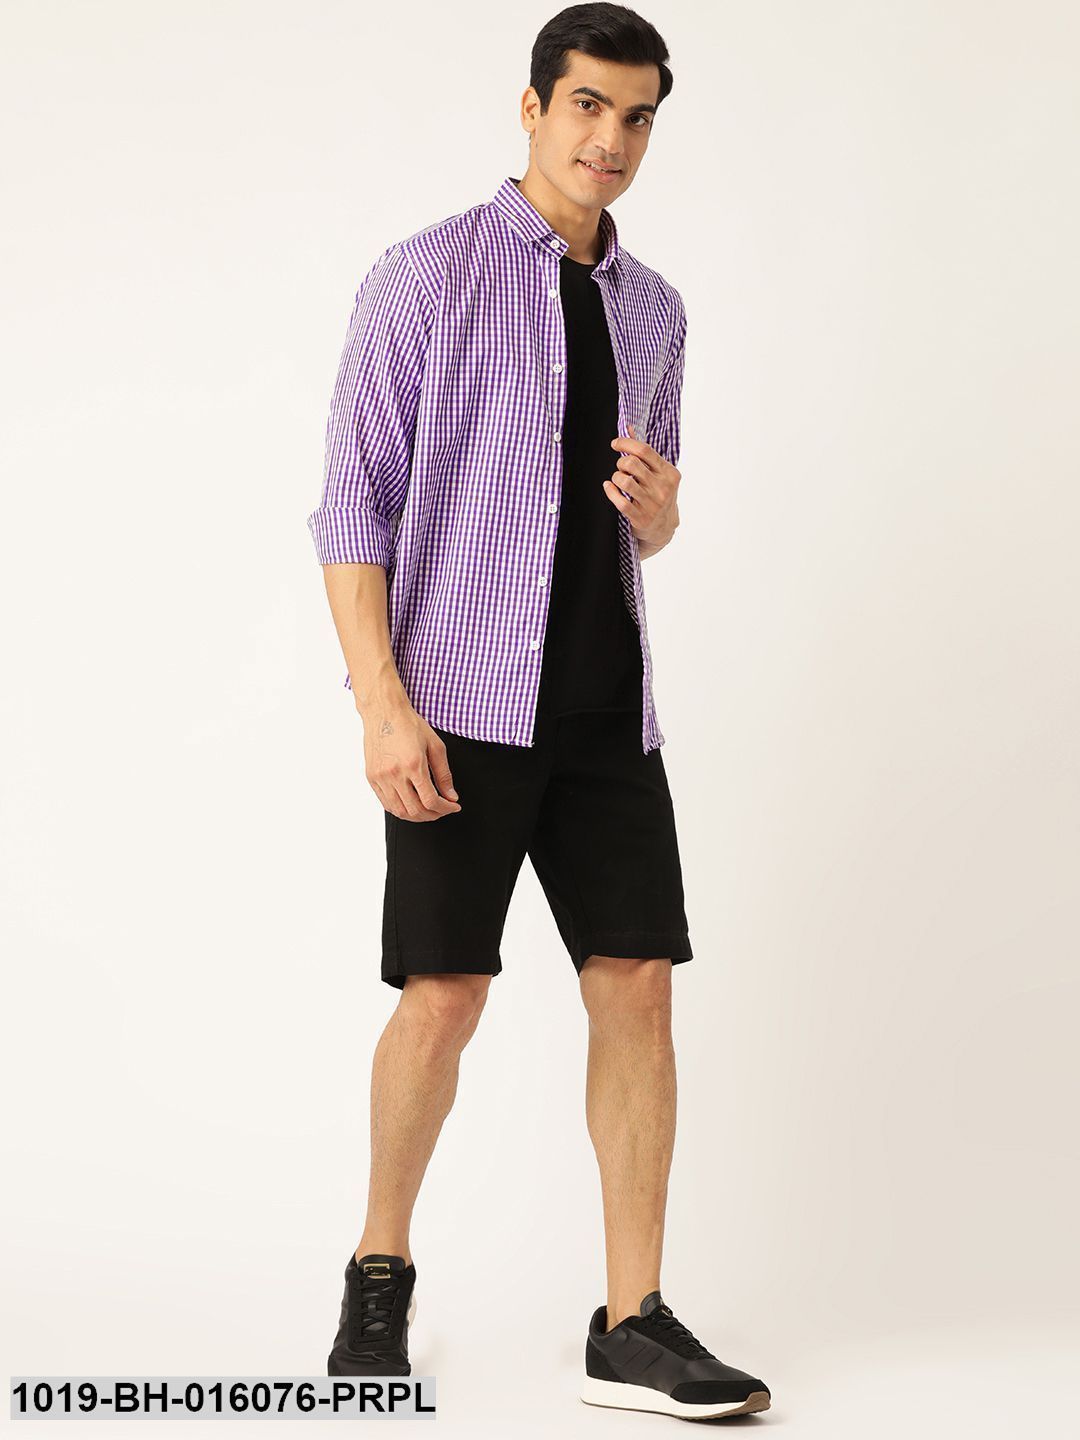 Men's Cotton Purple & White Checked Casual Shirt - Sojanya